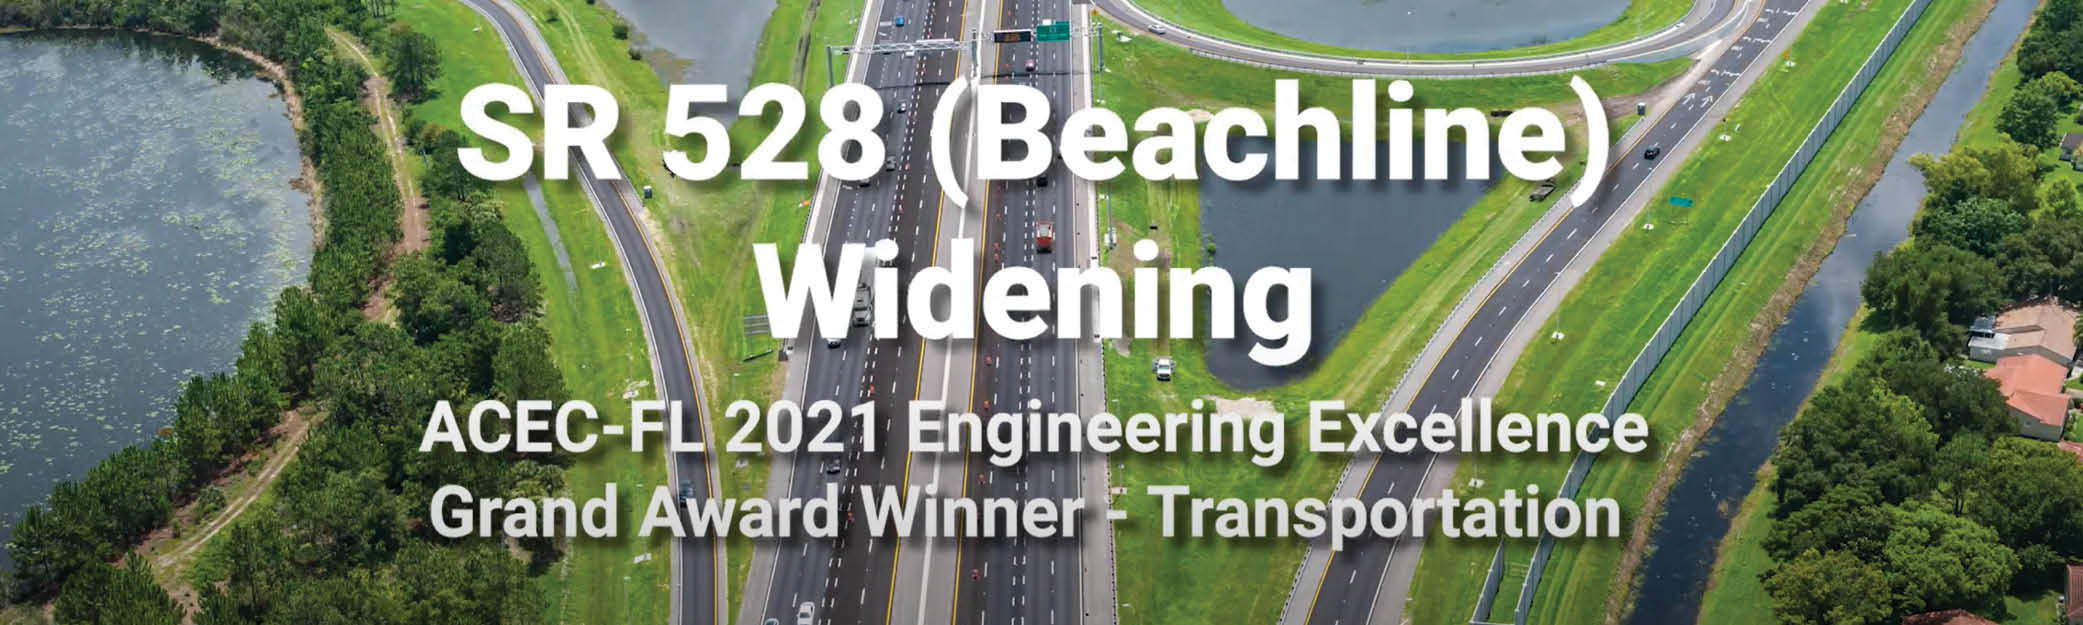 DRMP Transportation Project Wins ACEC-FL Grand Award